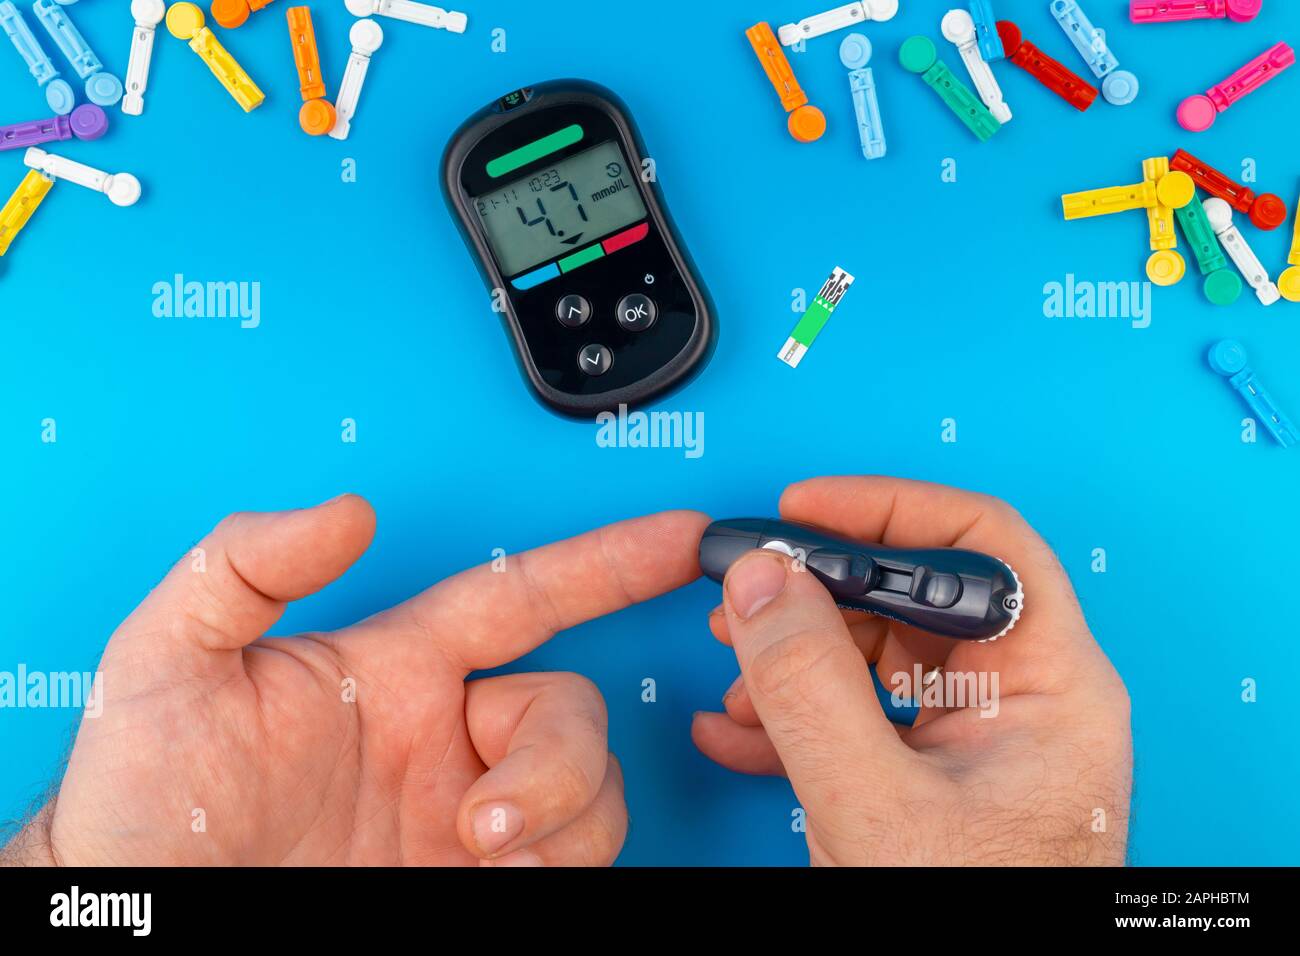 Test de diabète. Mains de l'homme vérifiant le taux de sucre dans le sang par le glucomètre sur fond bleu. Dispositif de mesure des taux de sucre dans le sang. Bandelettes de test, pilules Banque D'Images